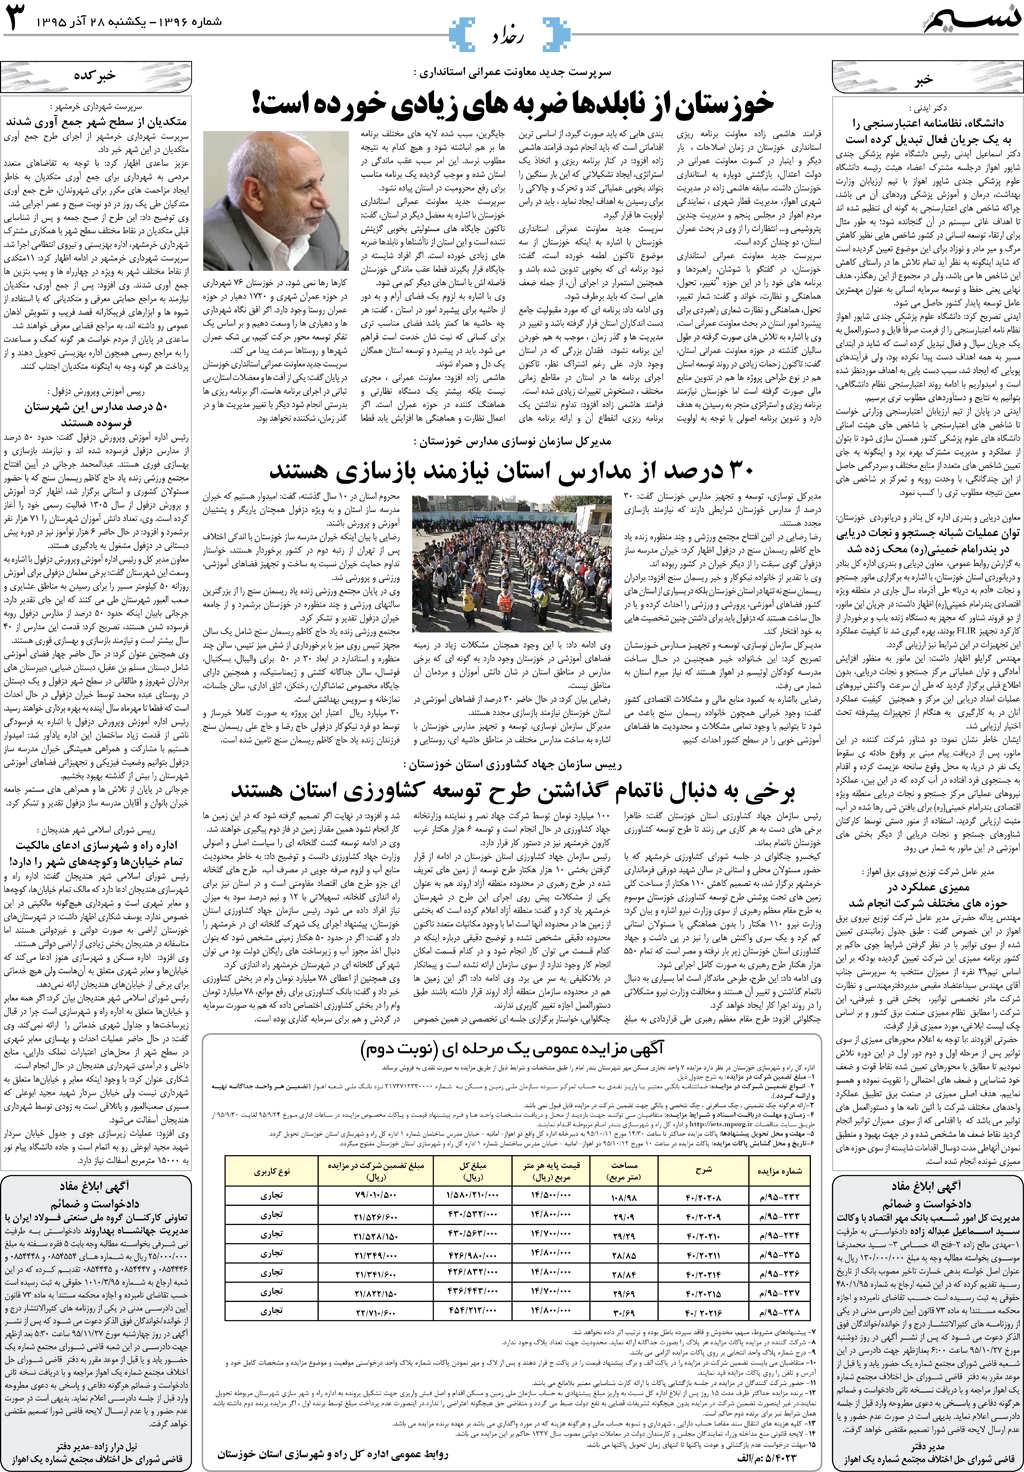 صفحه رخداد روزنامه نسیم شماره 1396